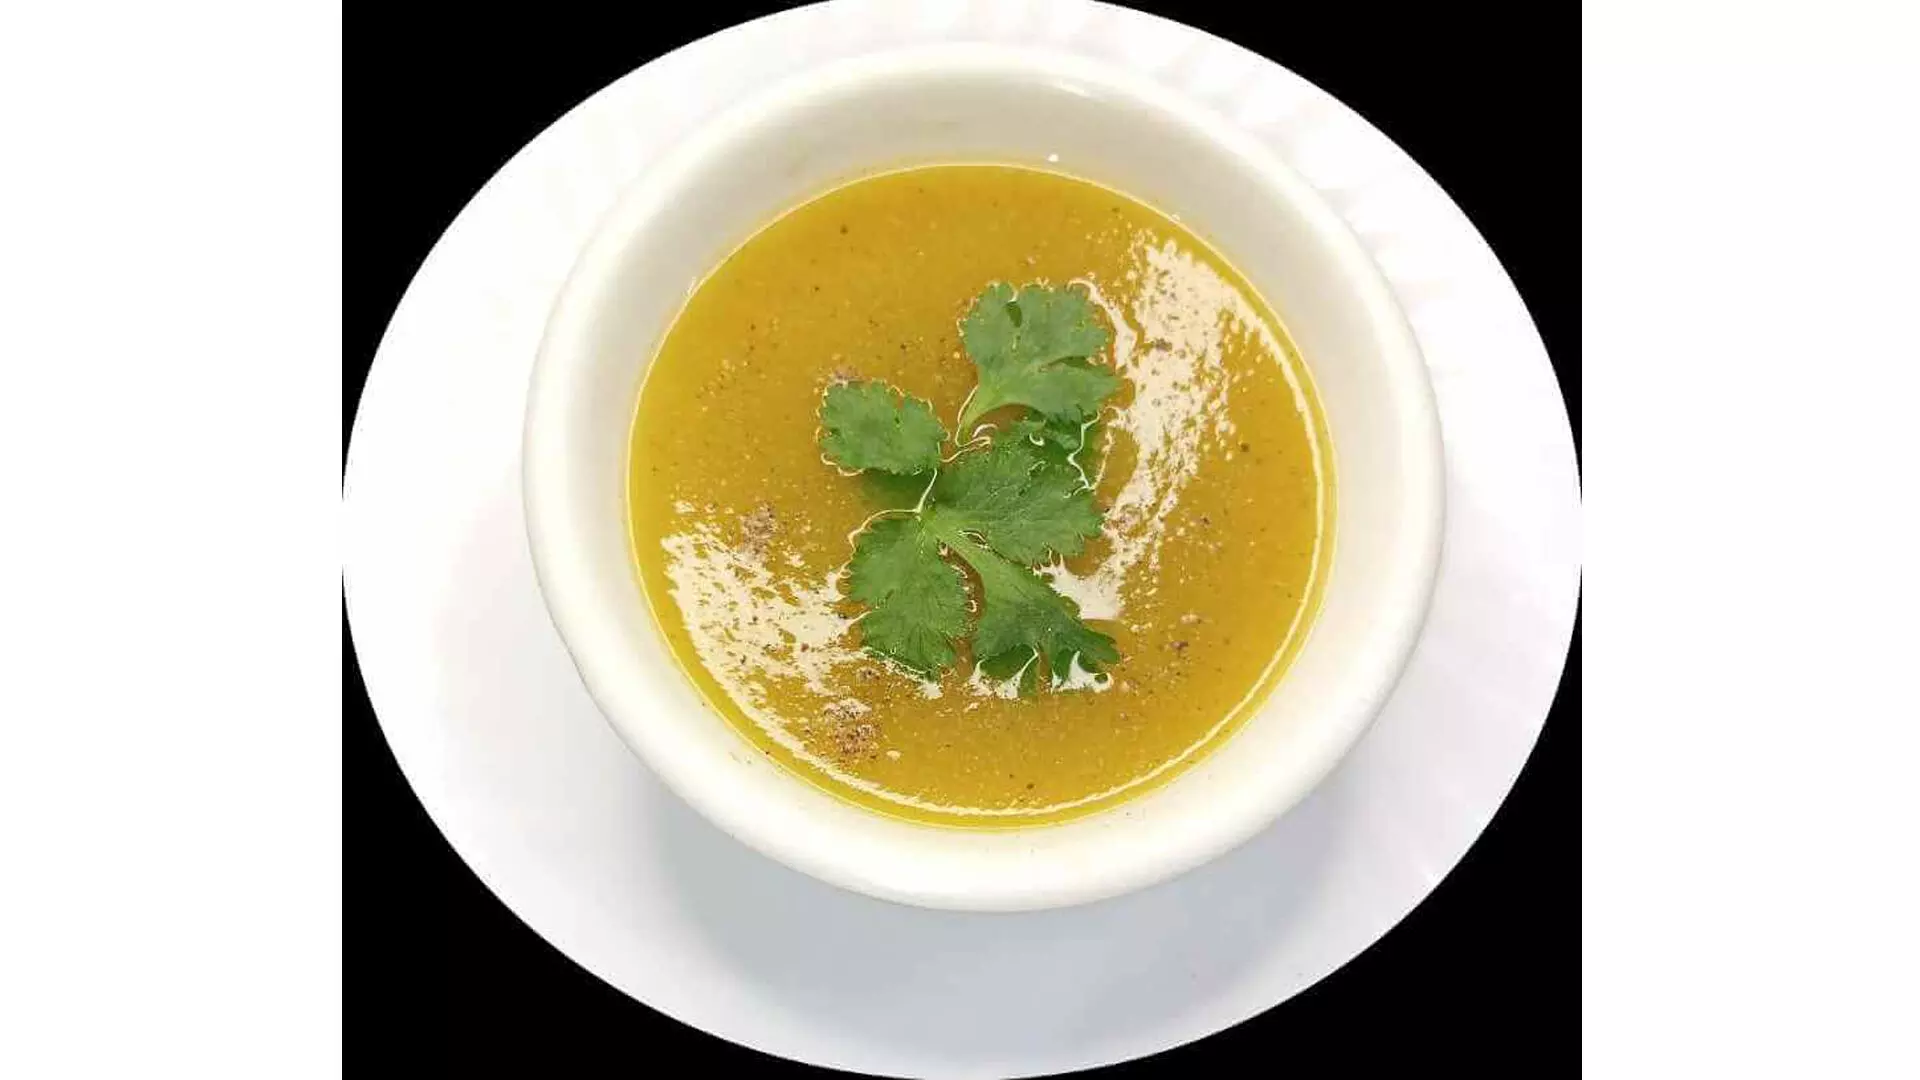 लौकी मूंगफली सूप का सेवन व्रत के दौरान भी किया जा सकता है, रेसिपी